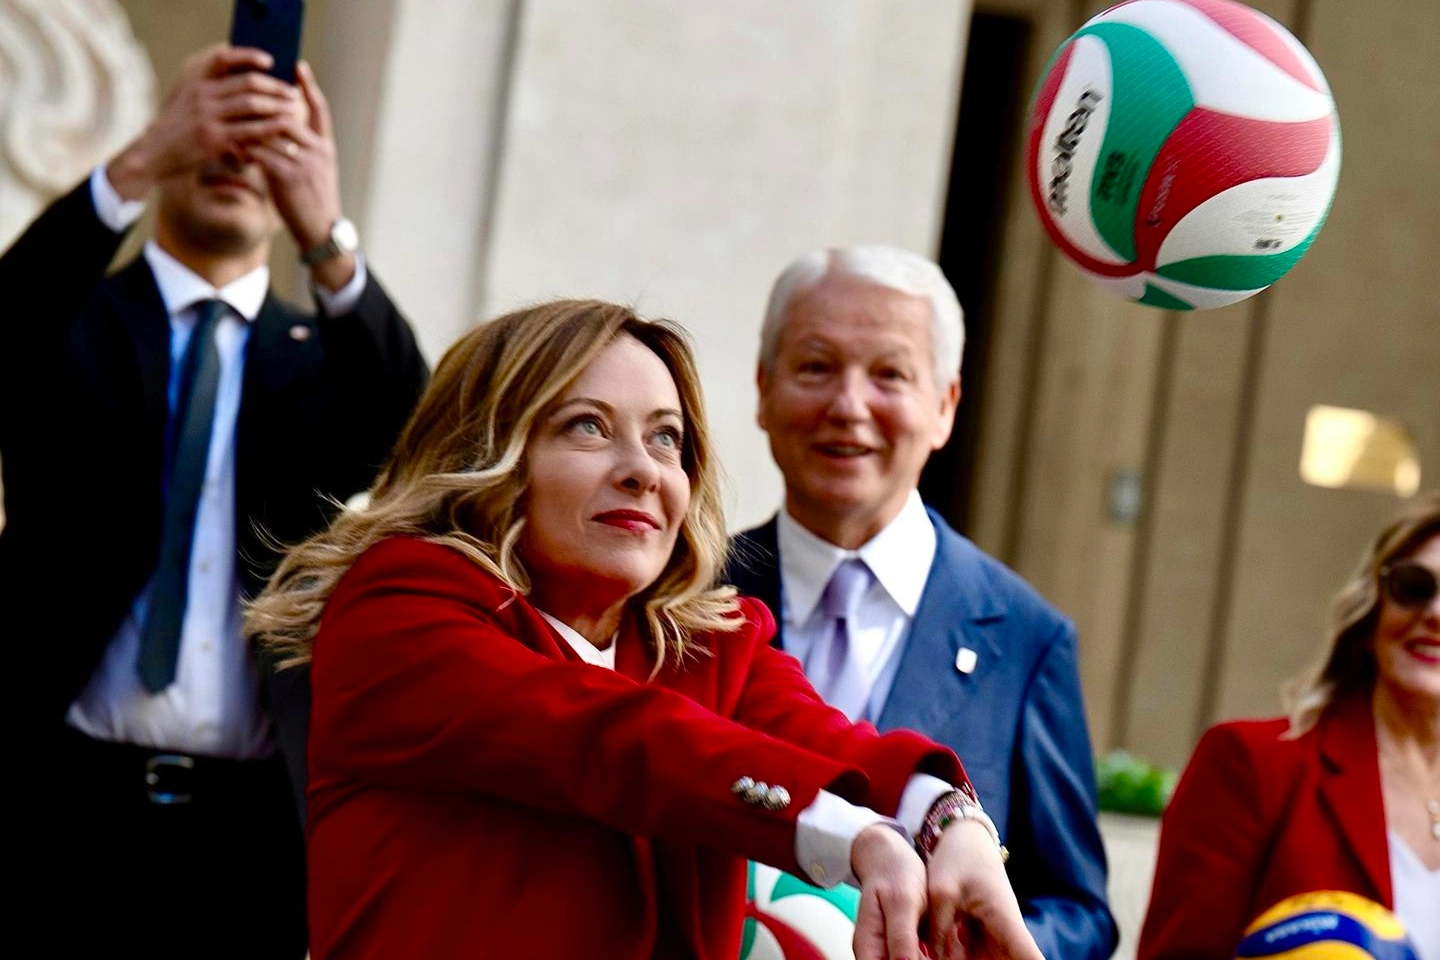 La premier Giorgia Meloni, 47 anni, ha incontrato a Palazzo Chigi le rappresentanti delle quattro squadre di volley femminile protagoniste delle coppe europee